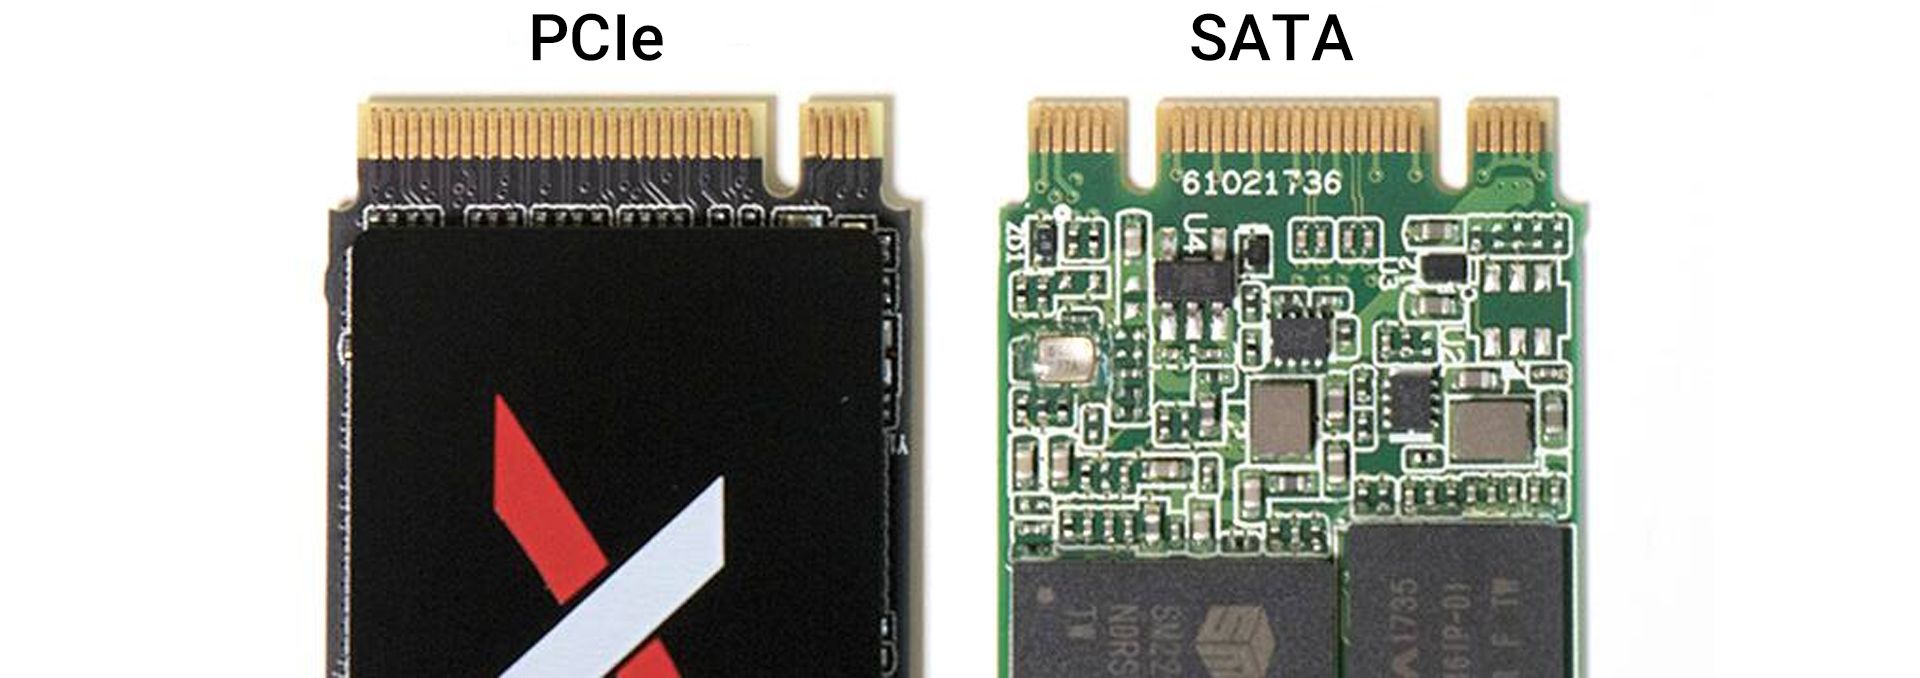 مرجع متخصصين ايران مقايسه رابط SATA با PCIe اس اس دي